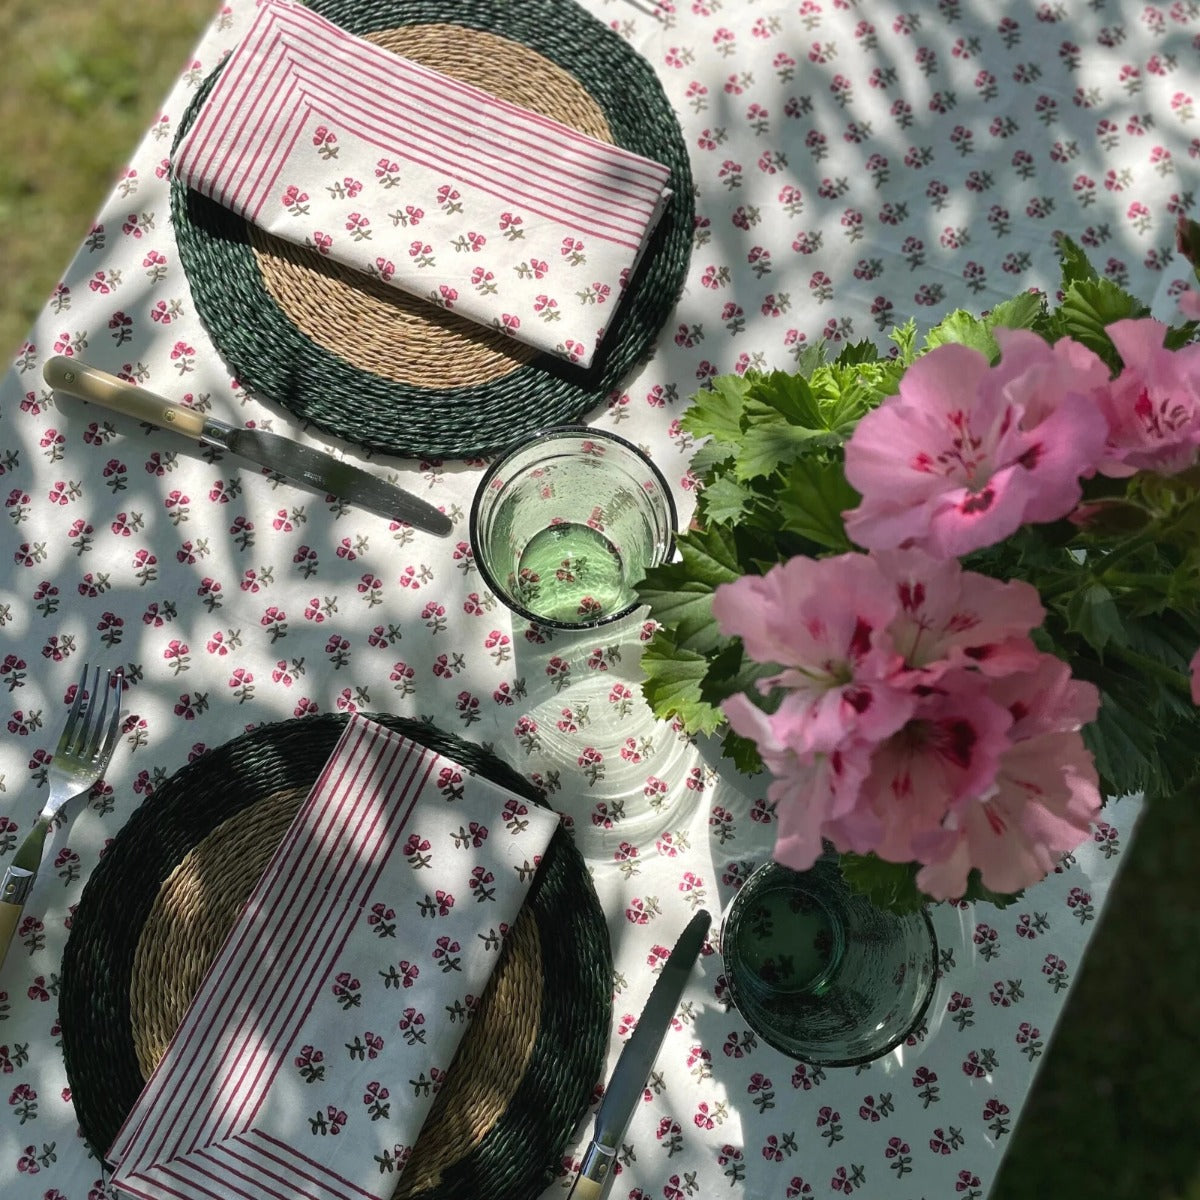 Ditsy' Pink Ruffle Handblock Printed Floral Tablecloth